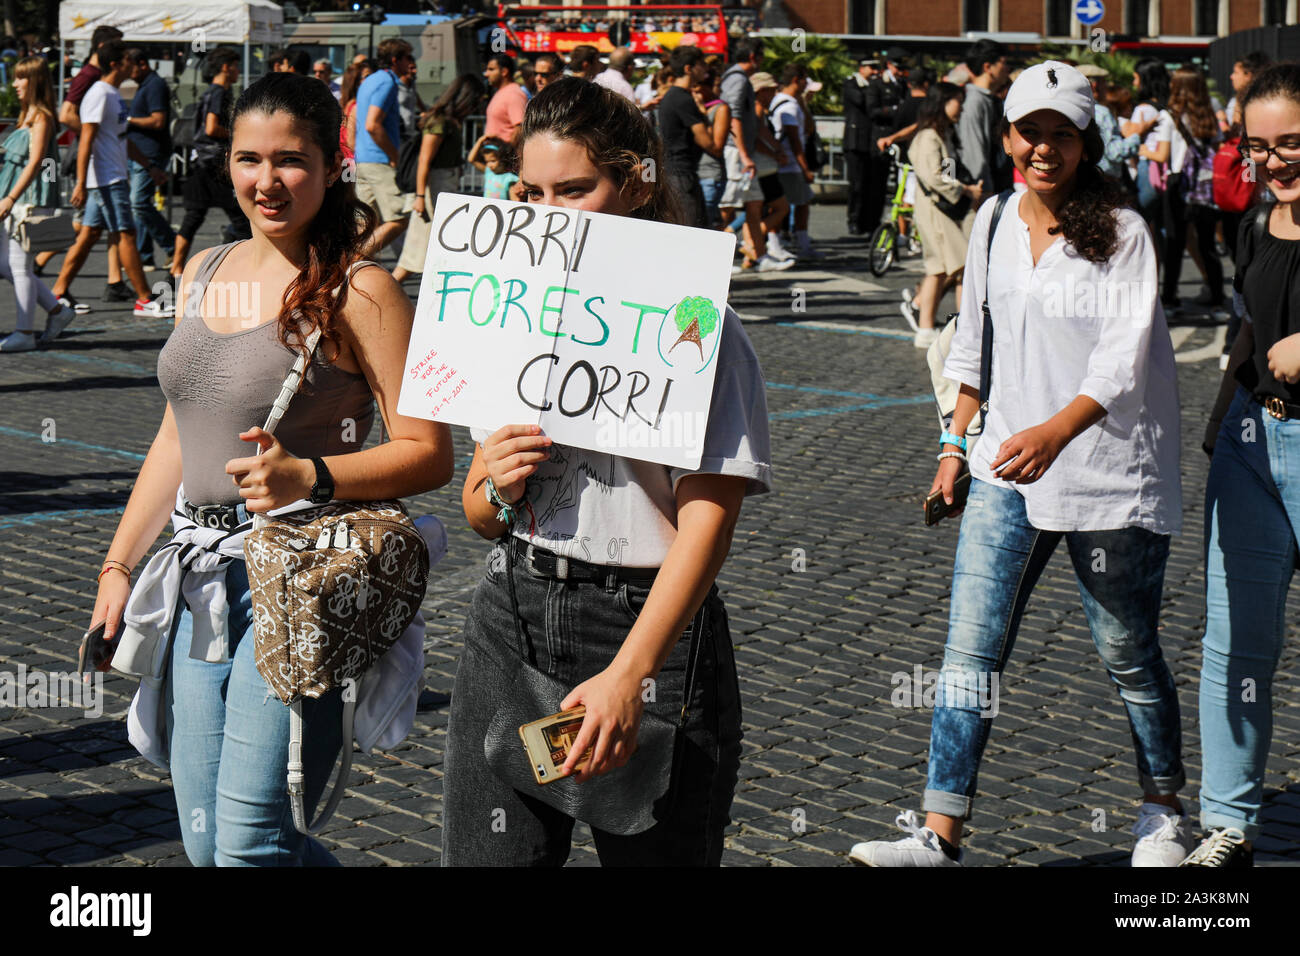 27/09/2019. Fridays for Future. School strike for climate. Climate change protest in Piazza della Madonna di Loreto, Rome, Italy. Stock Photo